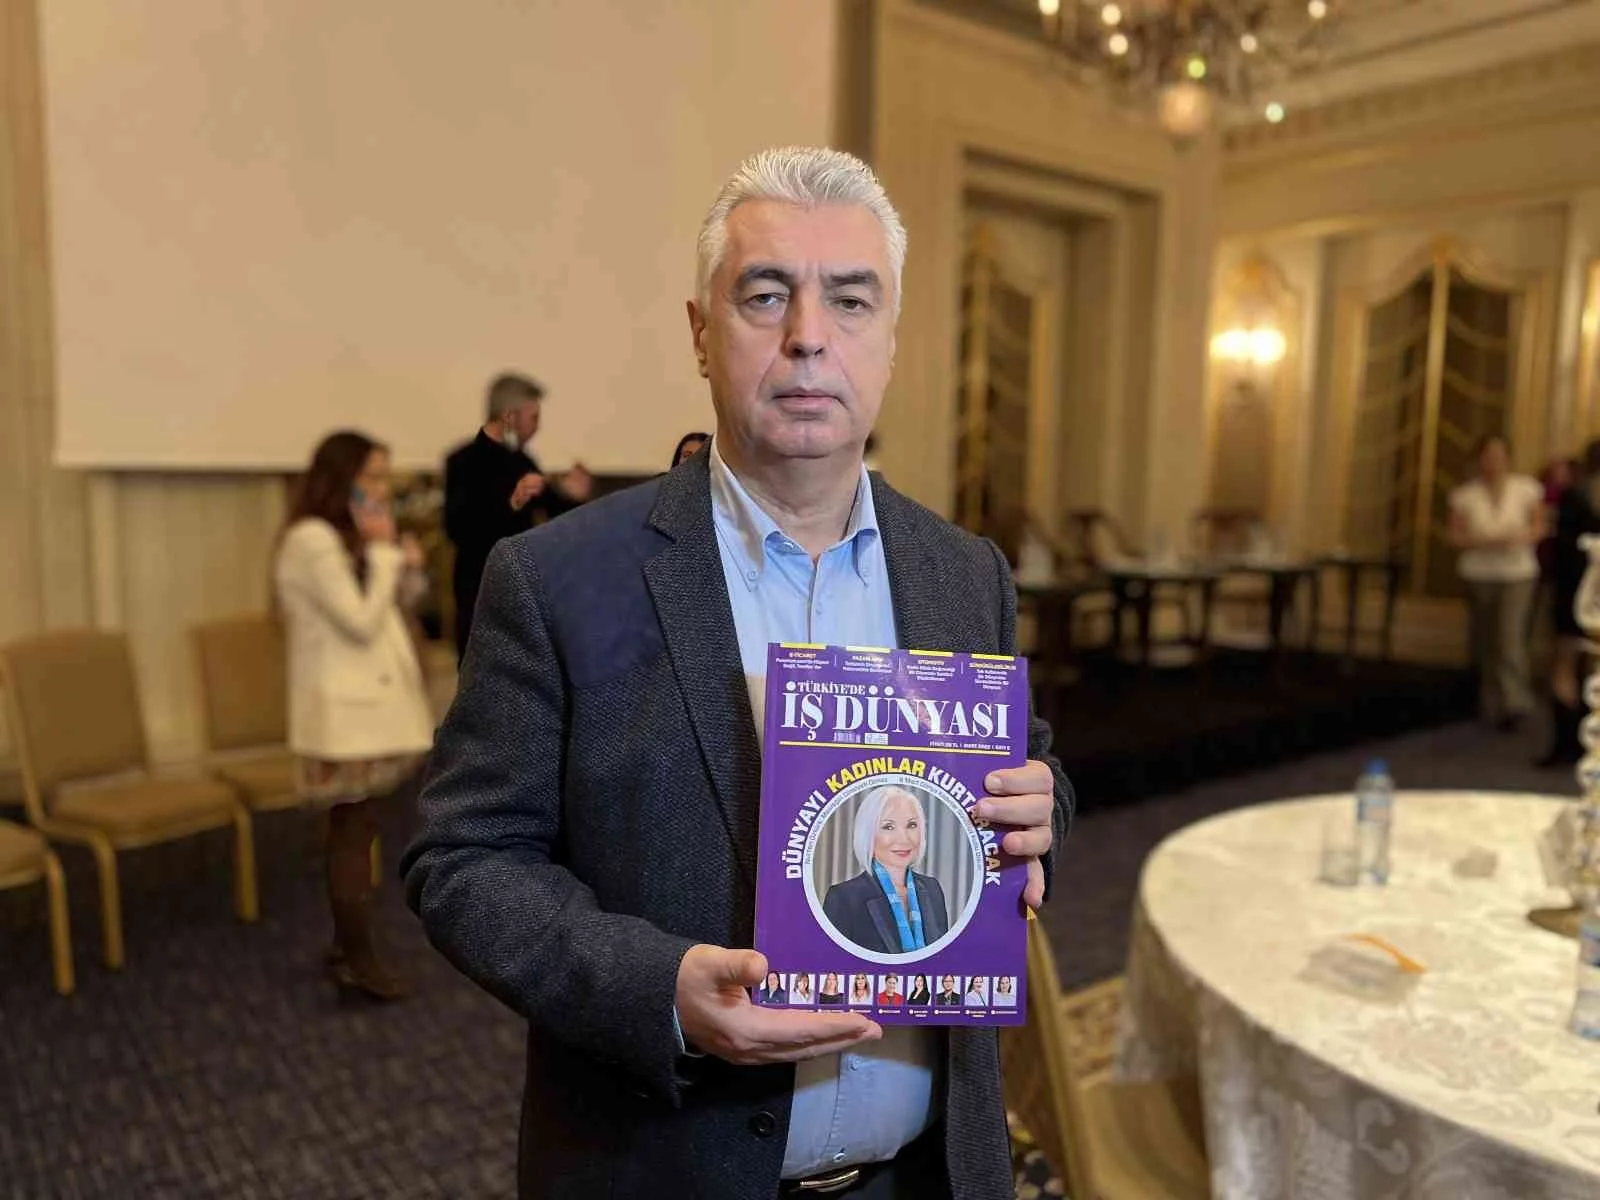 Türkiyede İş Dünyası dergisinin kadınlara özel sayısı okuyucuyla buluştu